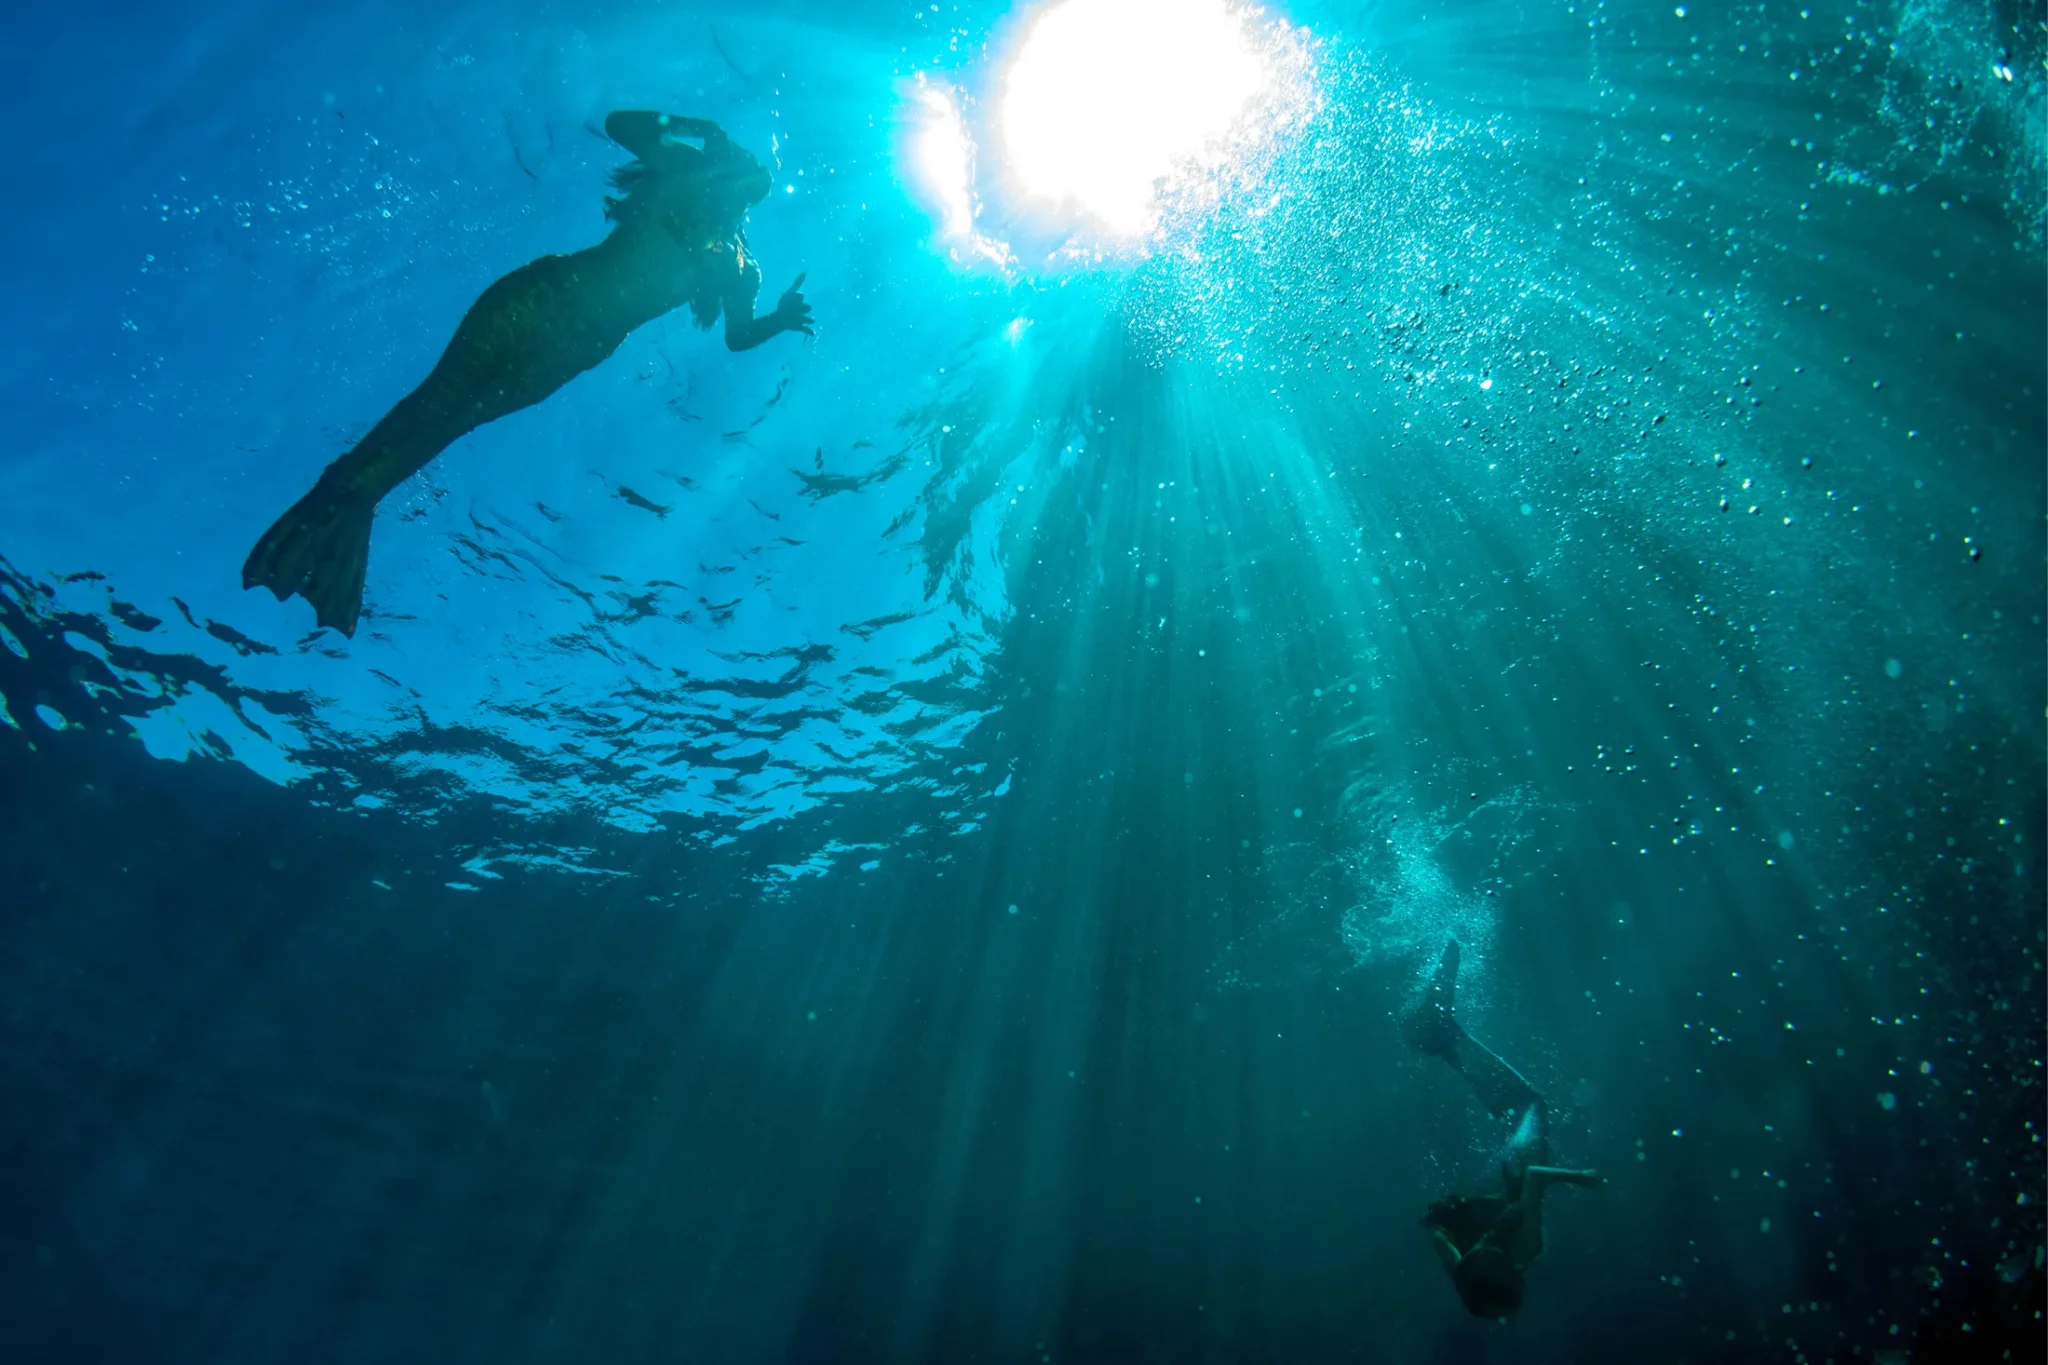 Mermaids swimming underwater in the deep sea.